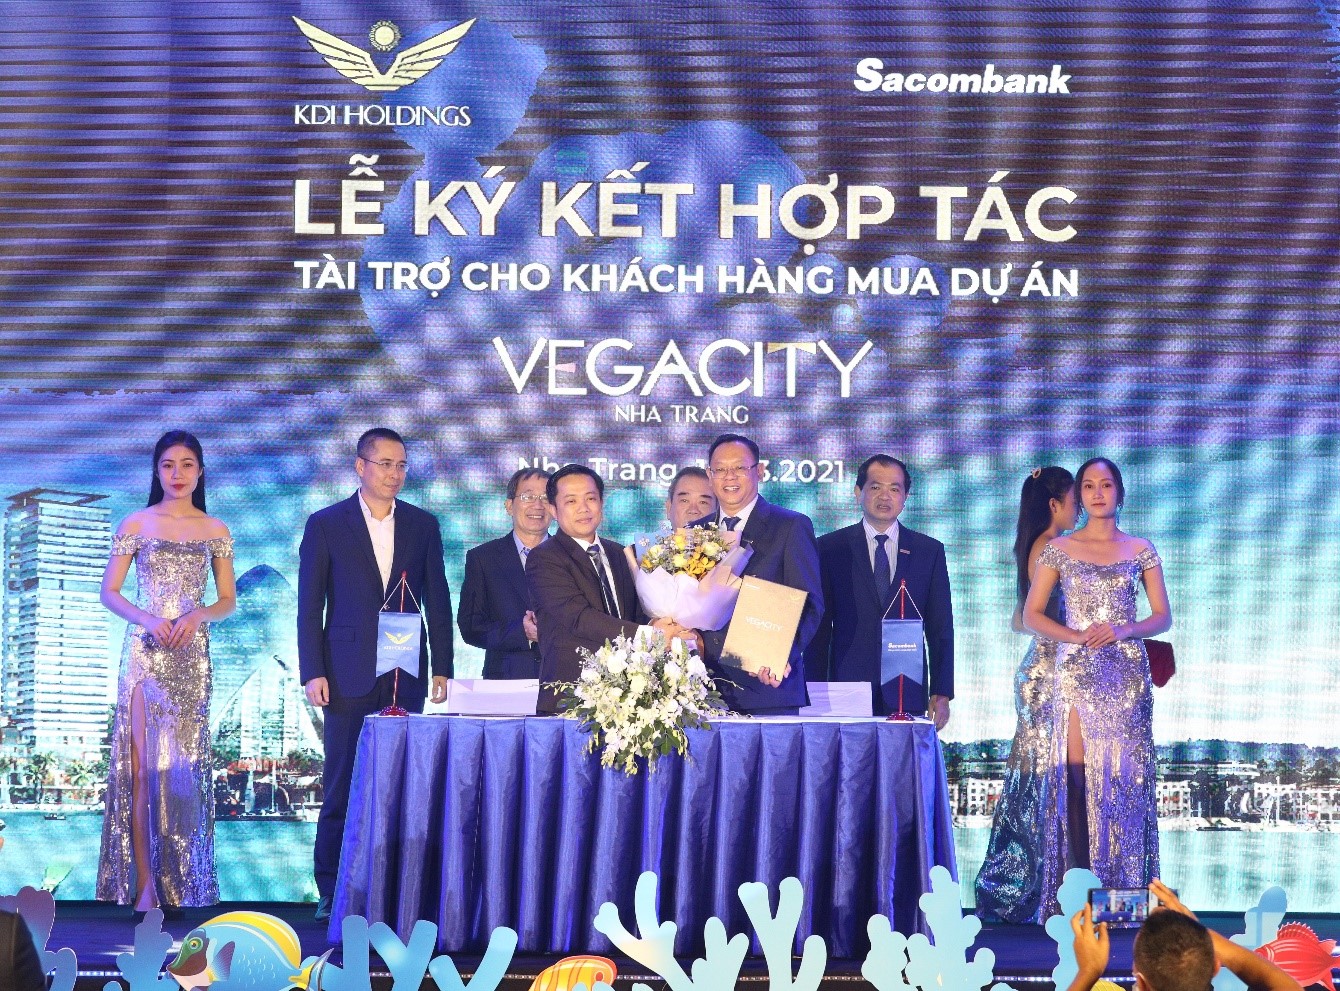 Dự ánVega City Nha Trang chọn Sacombank là đối tác tài chính